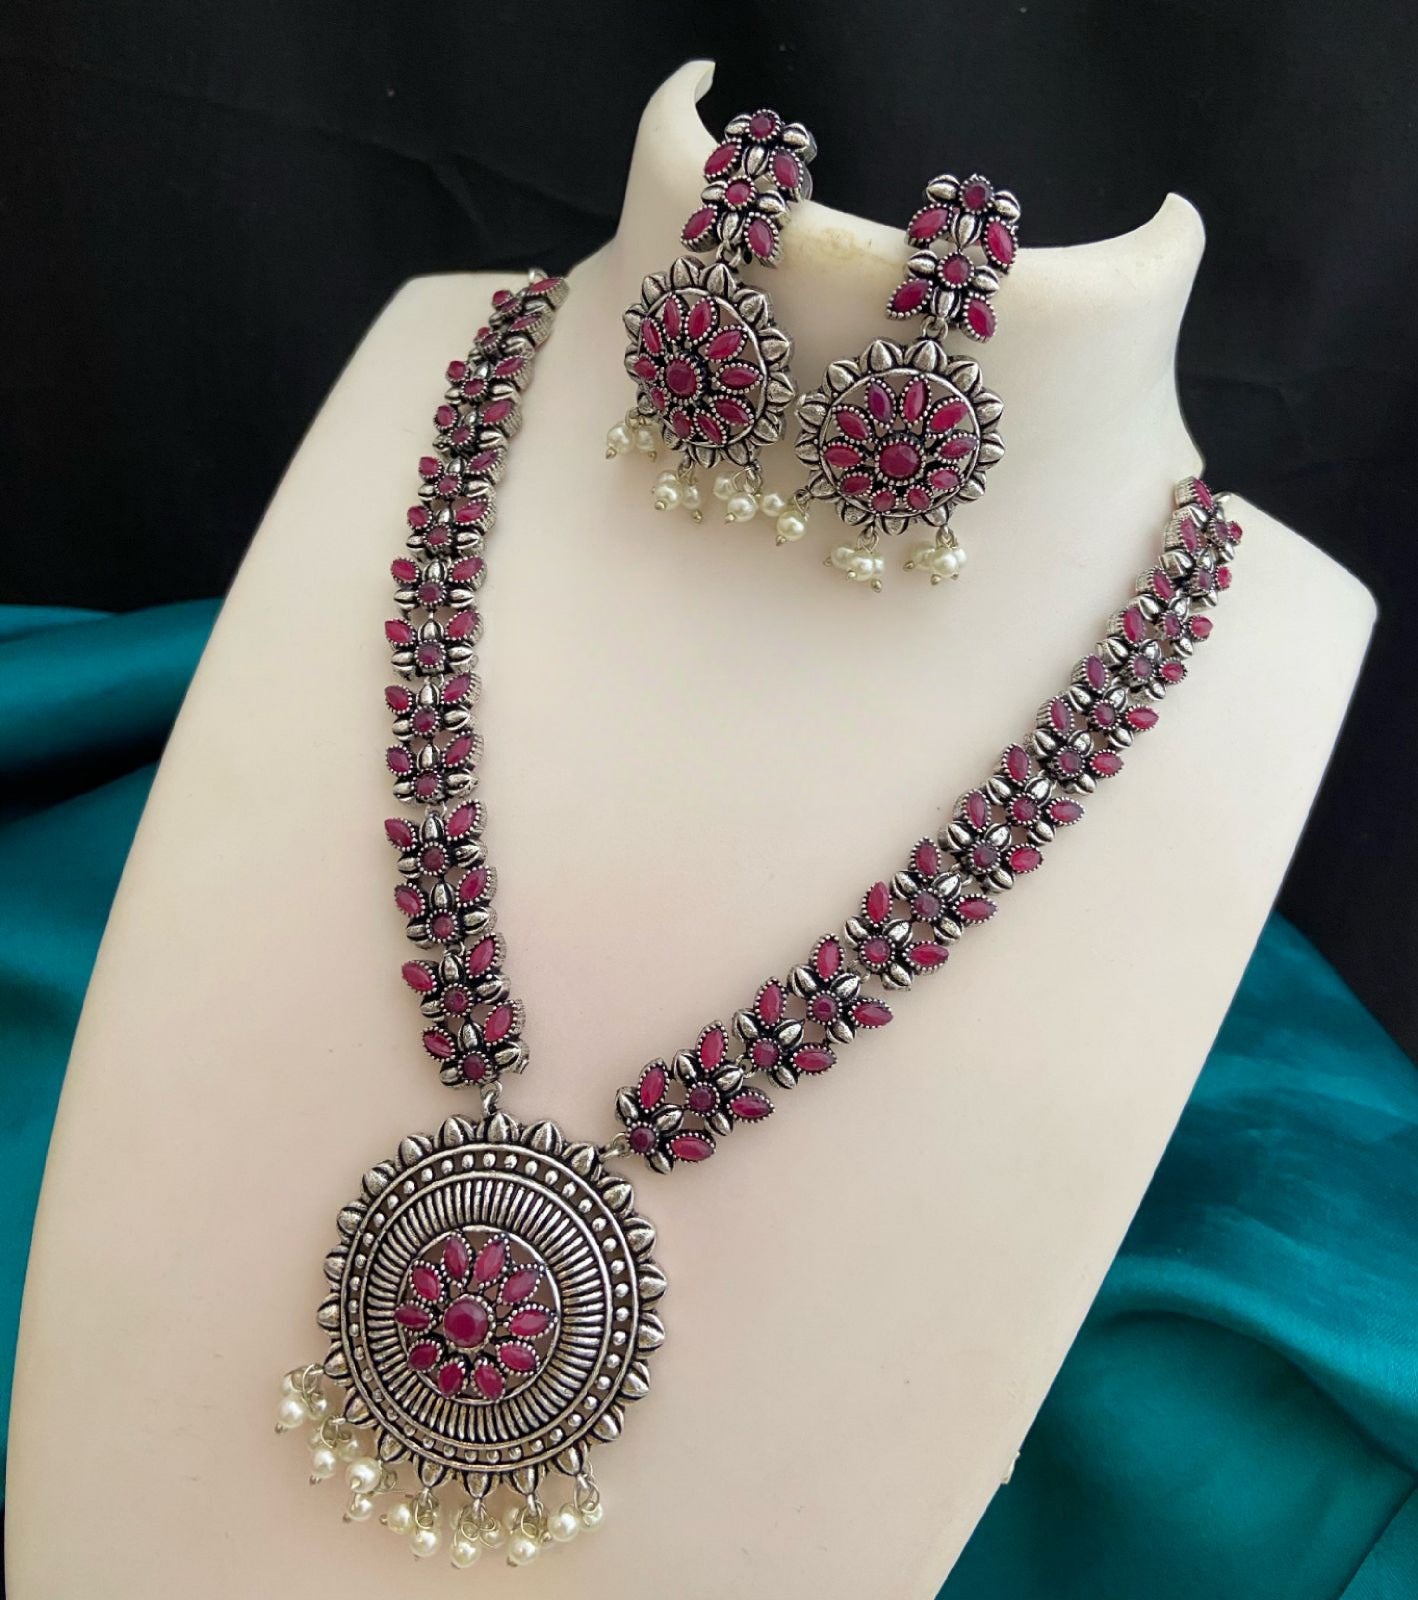 Premium Quality German Silver Oxidized Indian jewelry necklace | Indian Ethnic Jewelry | Wedding Jewelry | Party Wear Jewelry Set